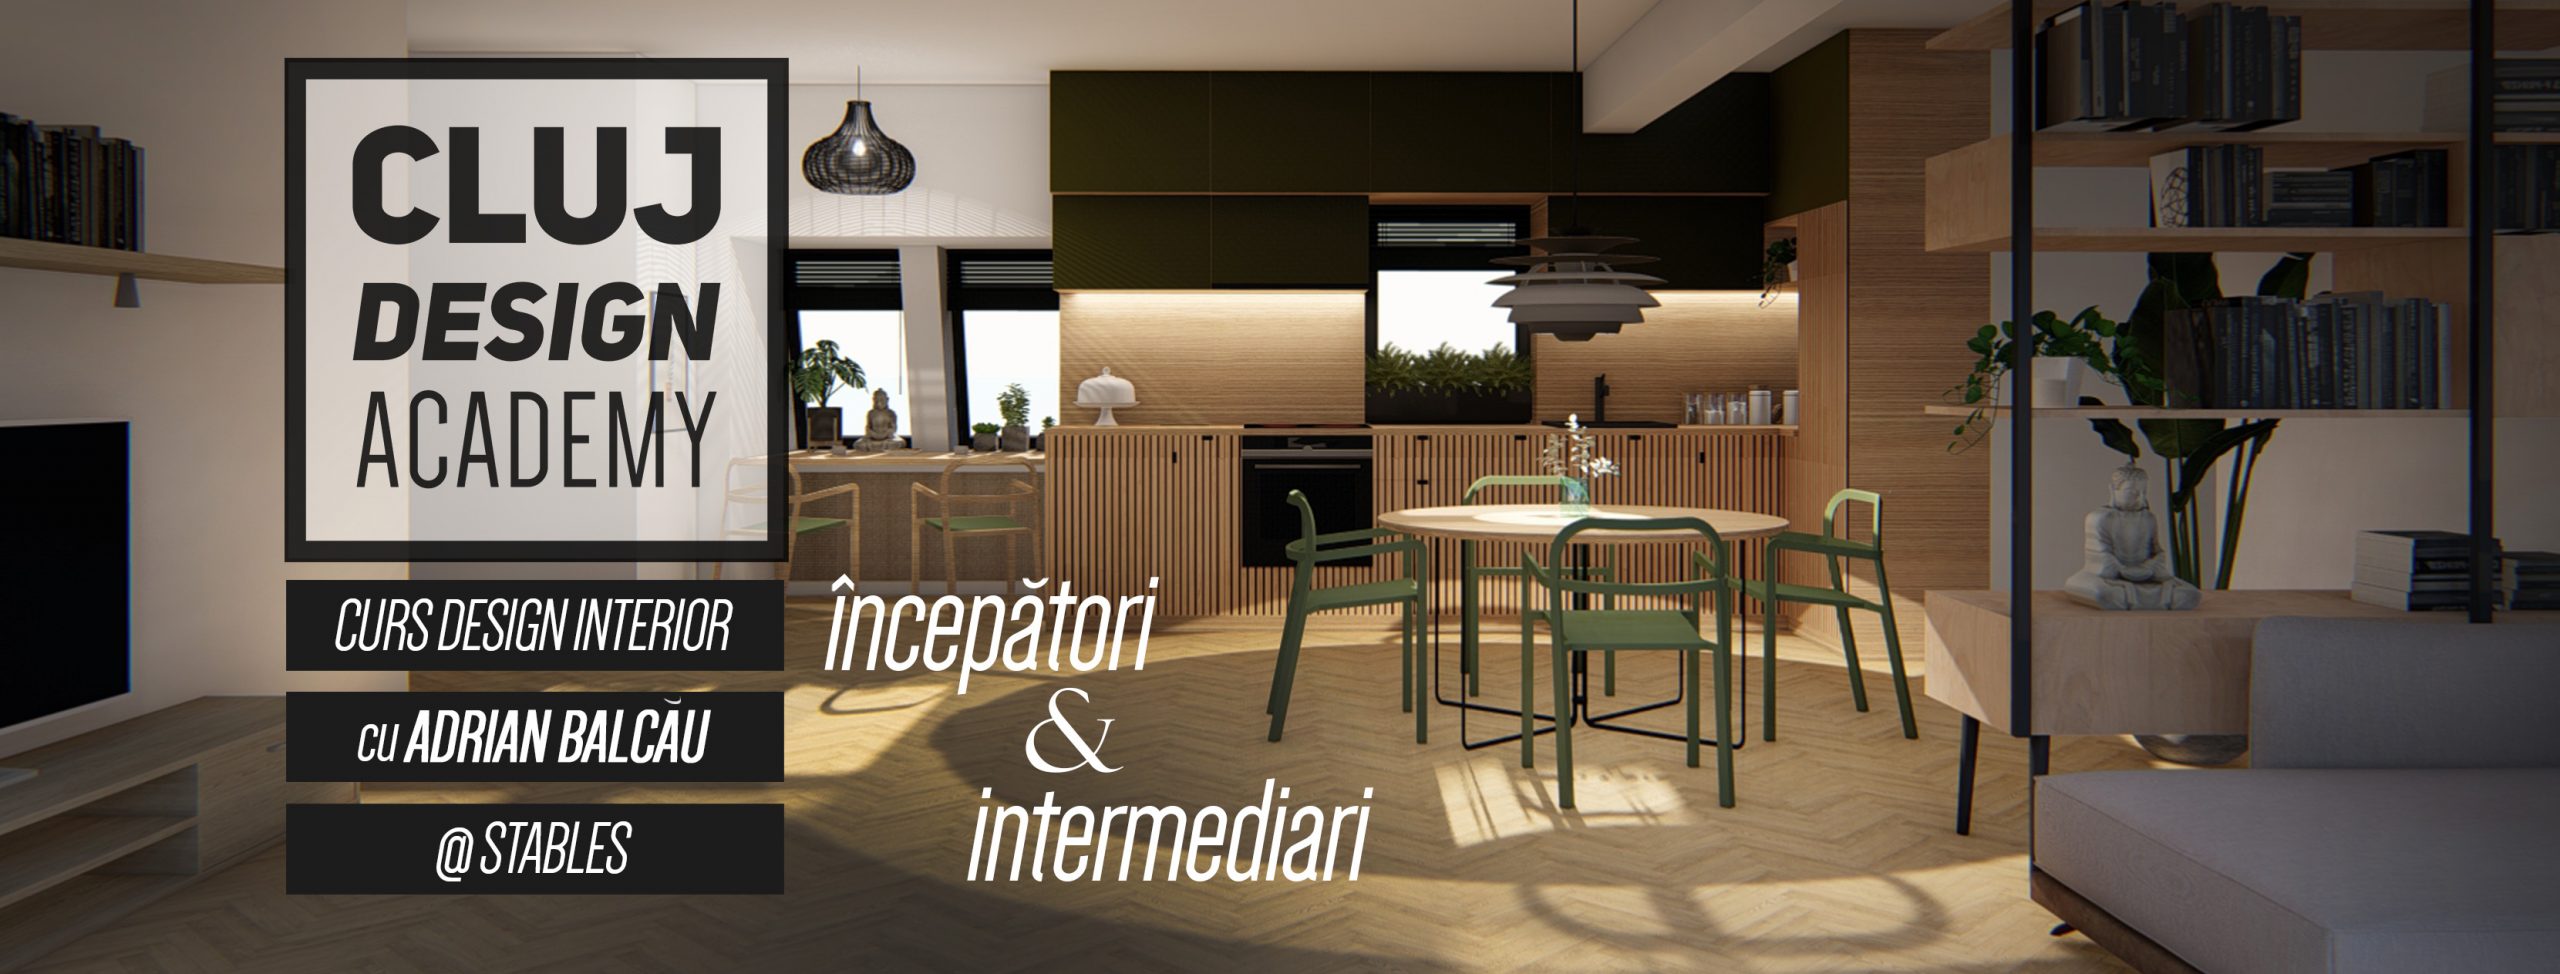 Curs de Design Interior | intermediari